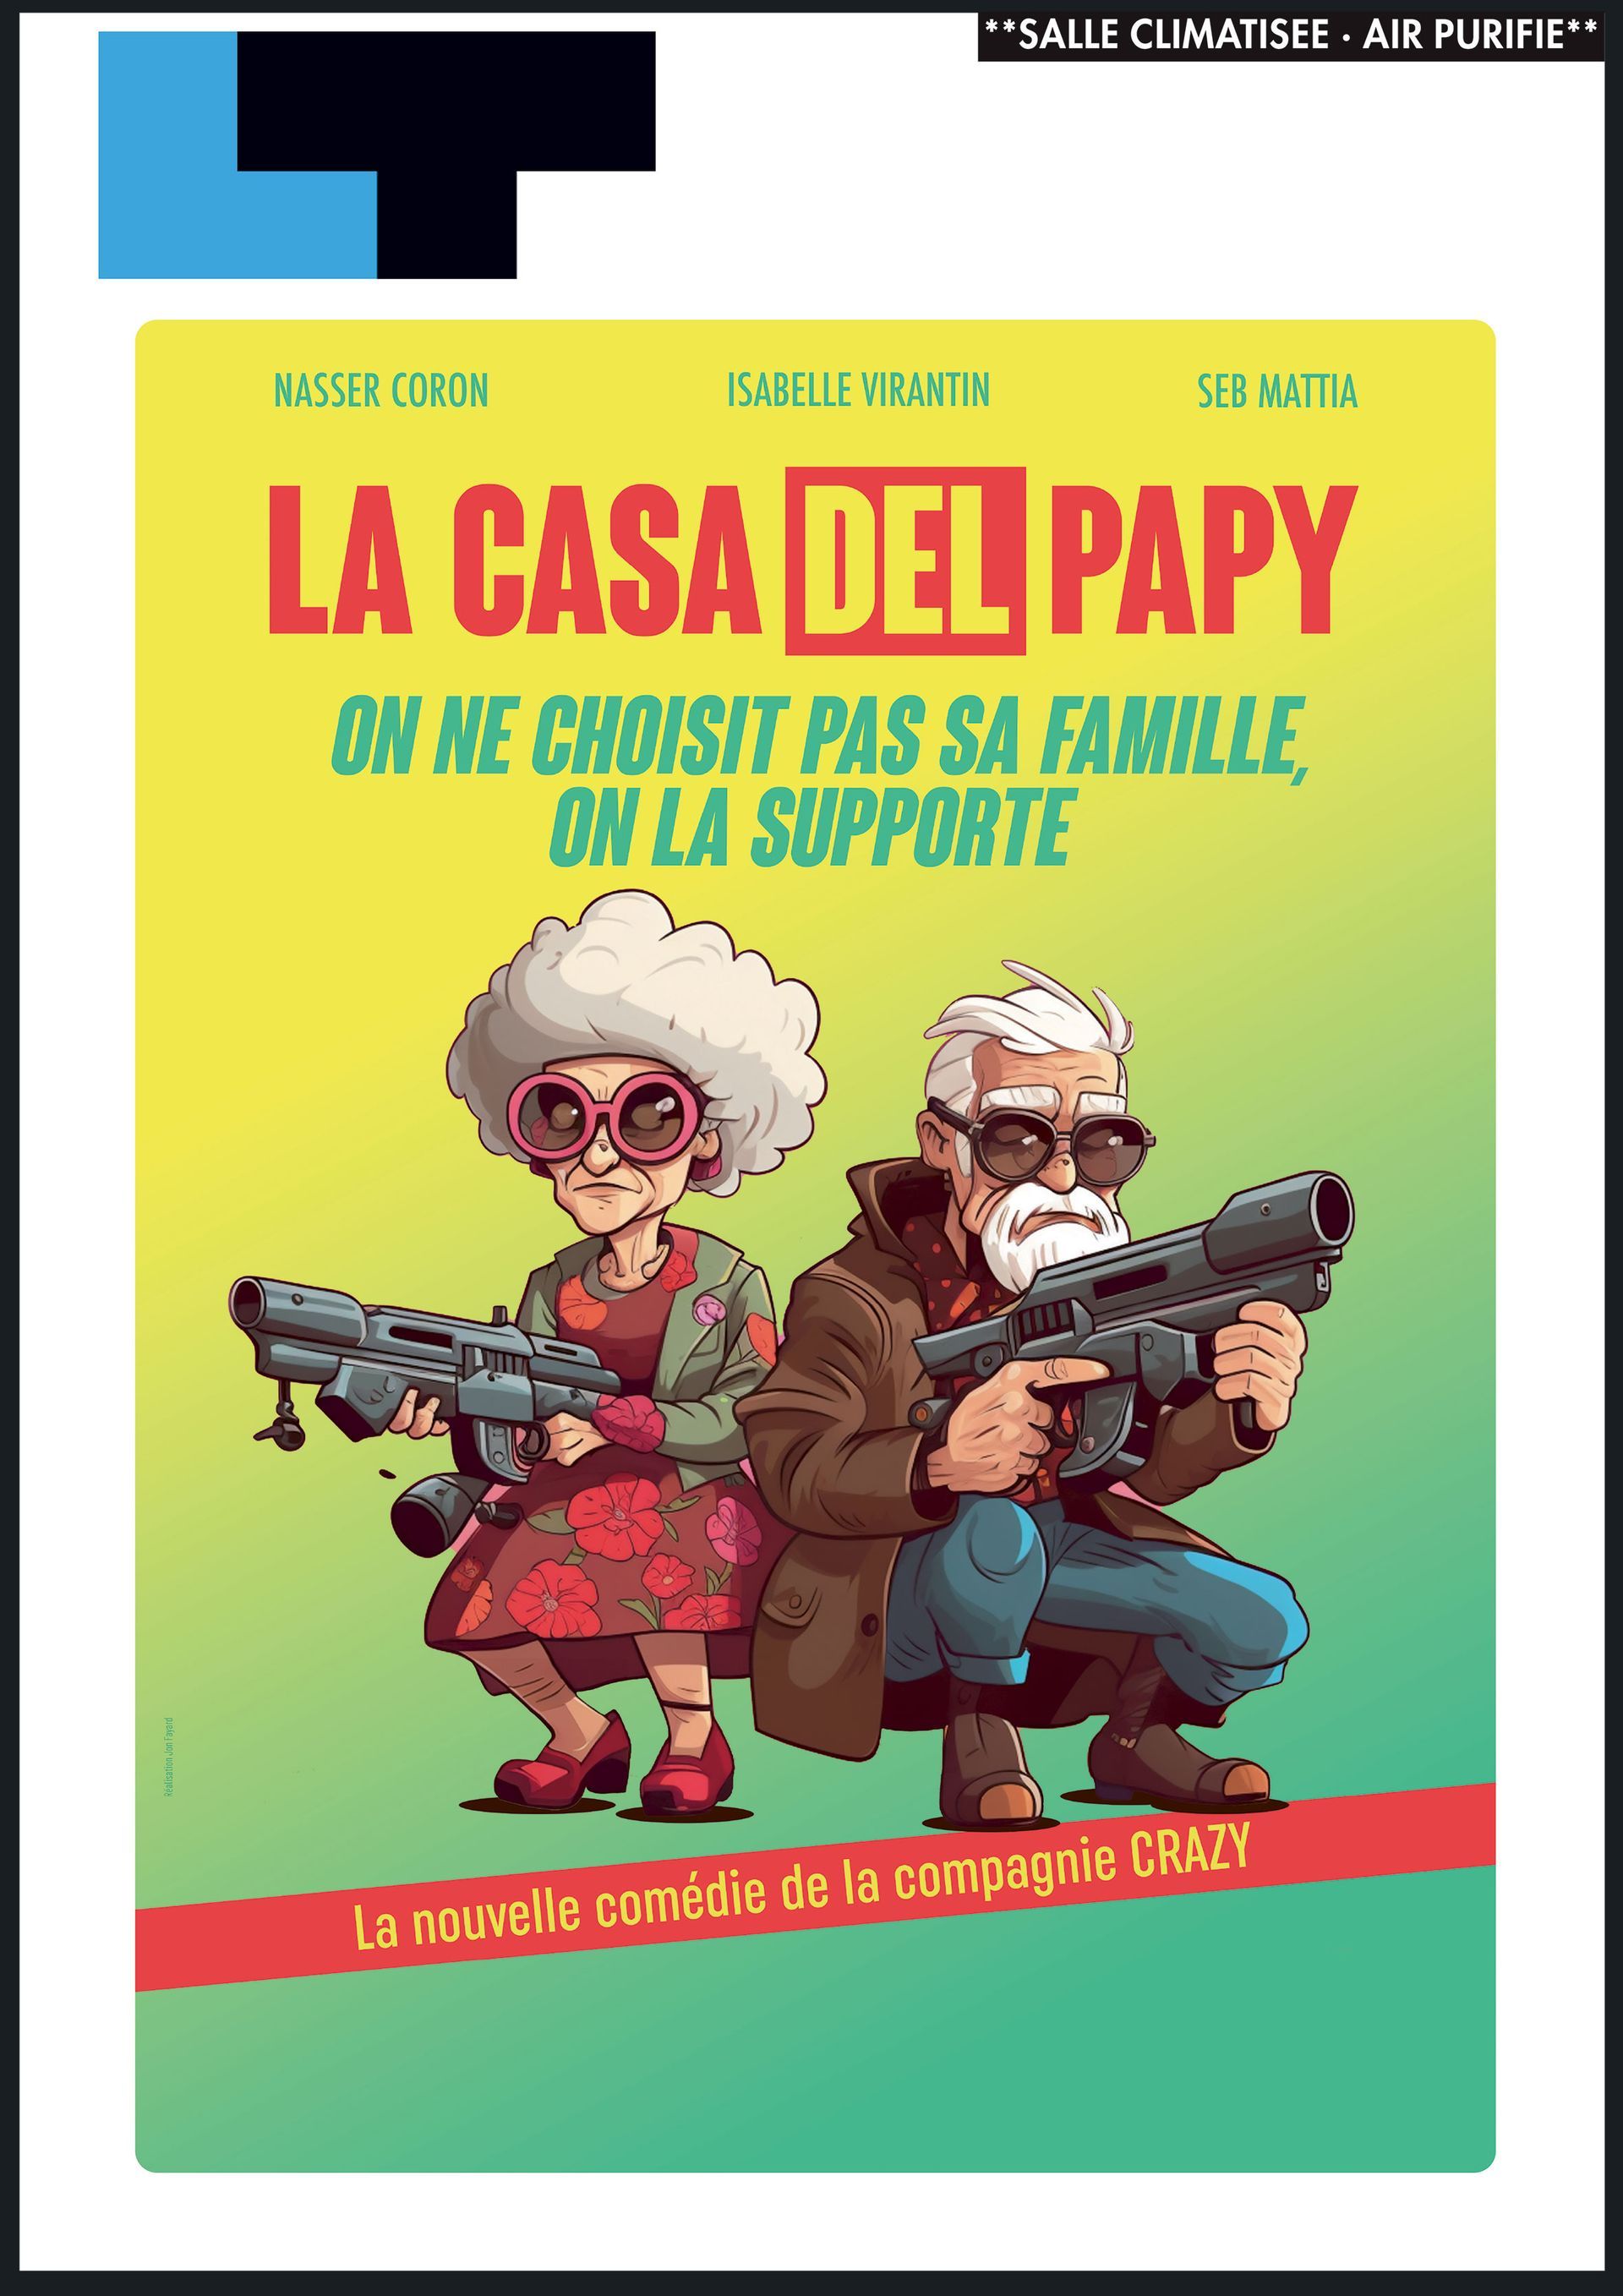 Une affiche pour un spectacle intitulé La casa del papy